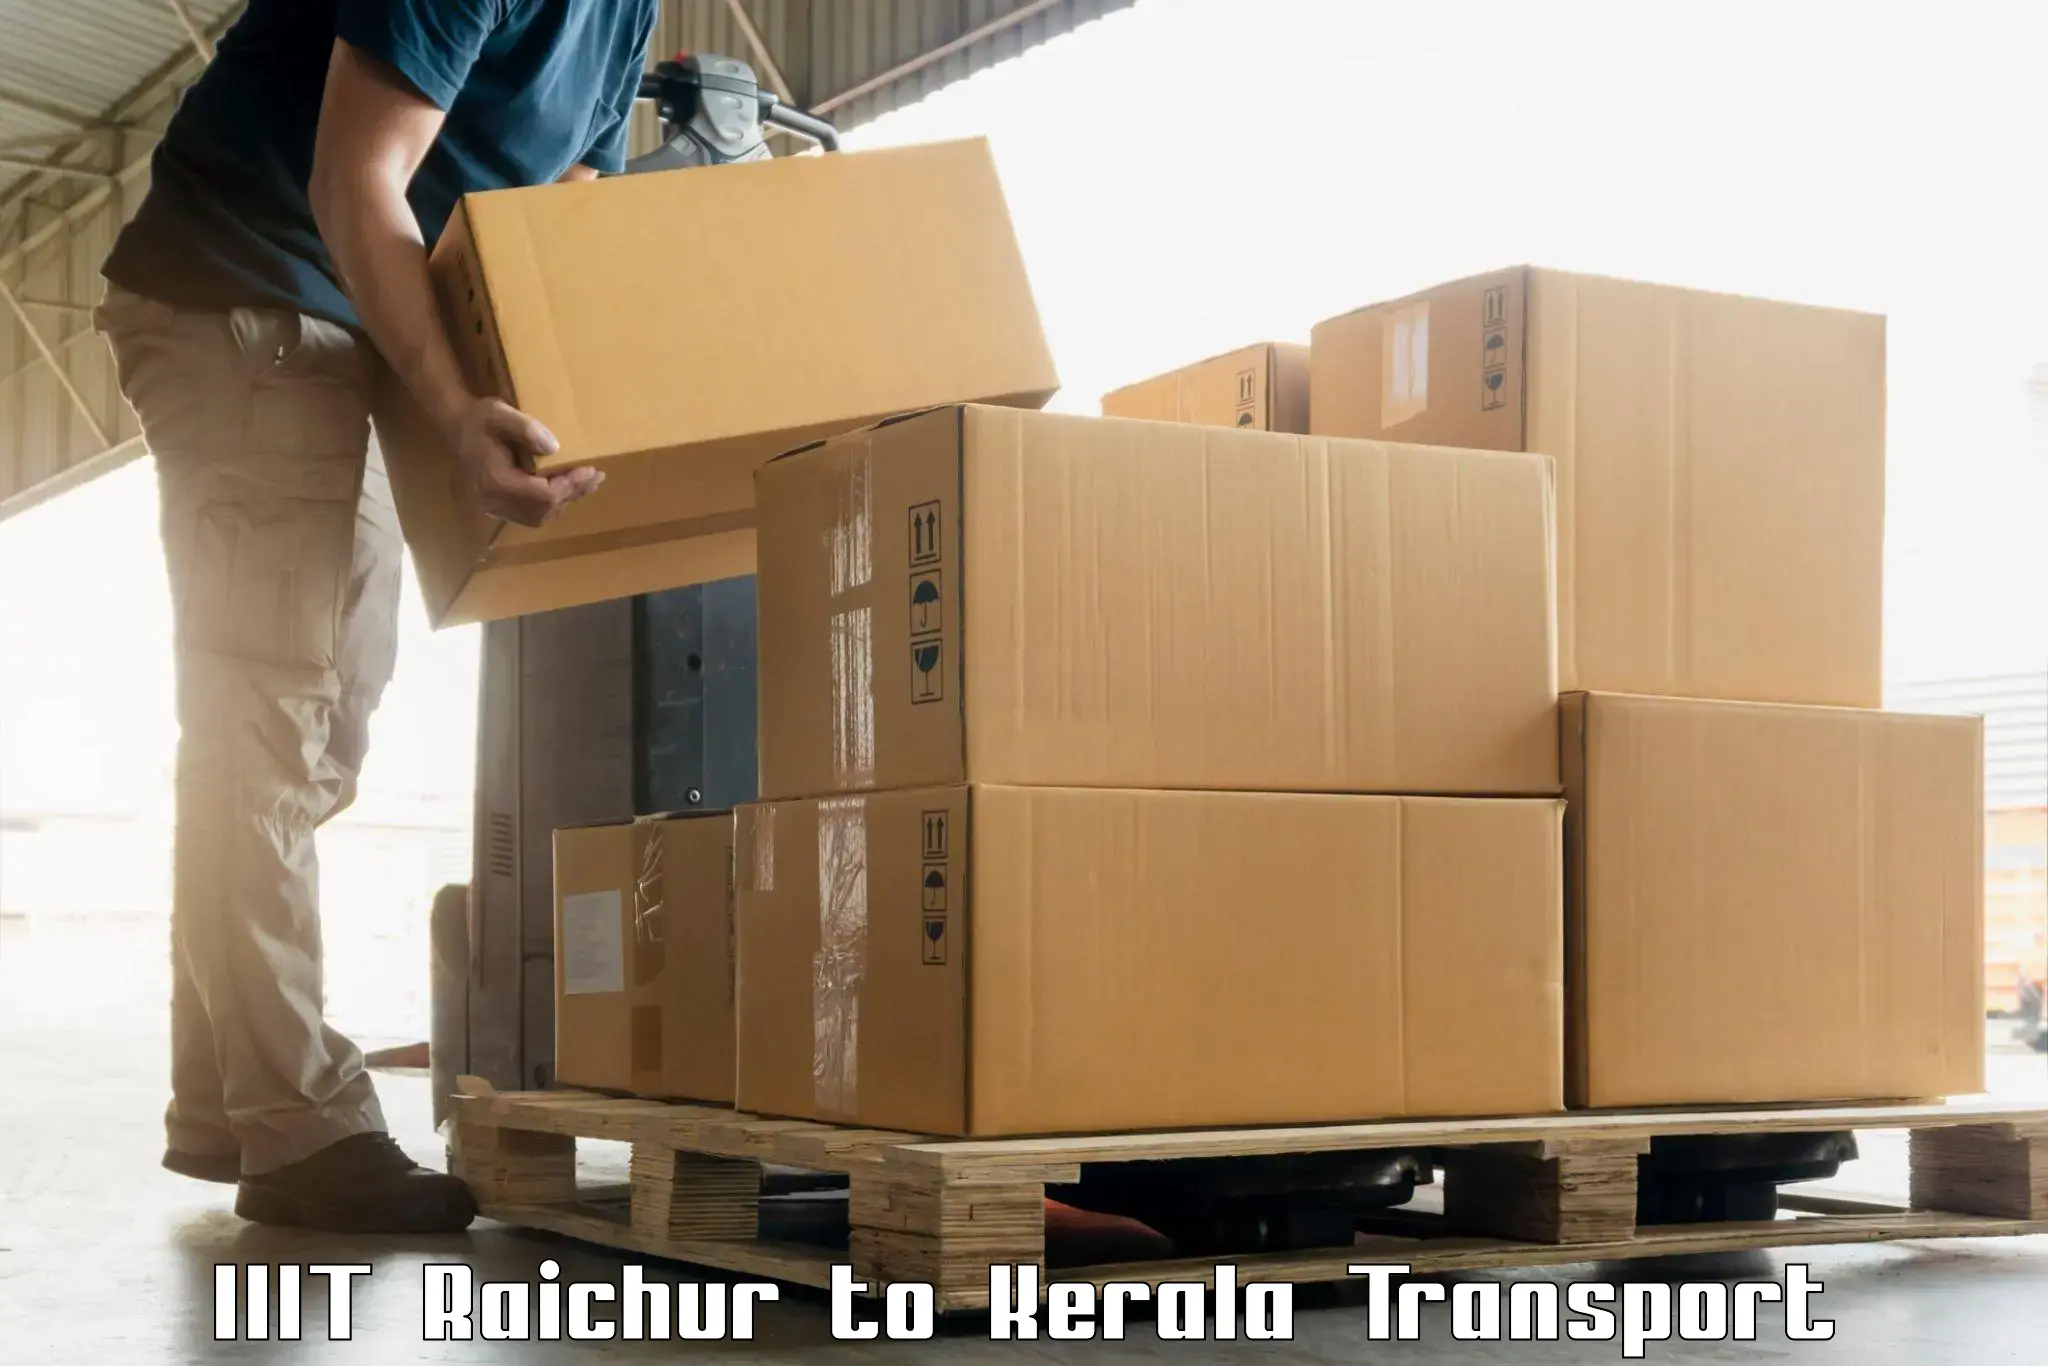 Daily parcel service transport IIIT Raichur to Kuthumkal